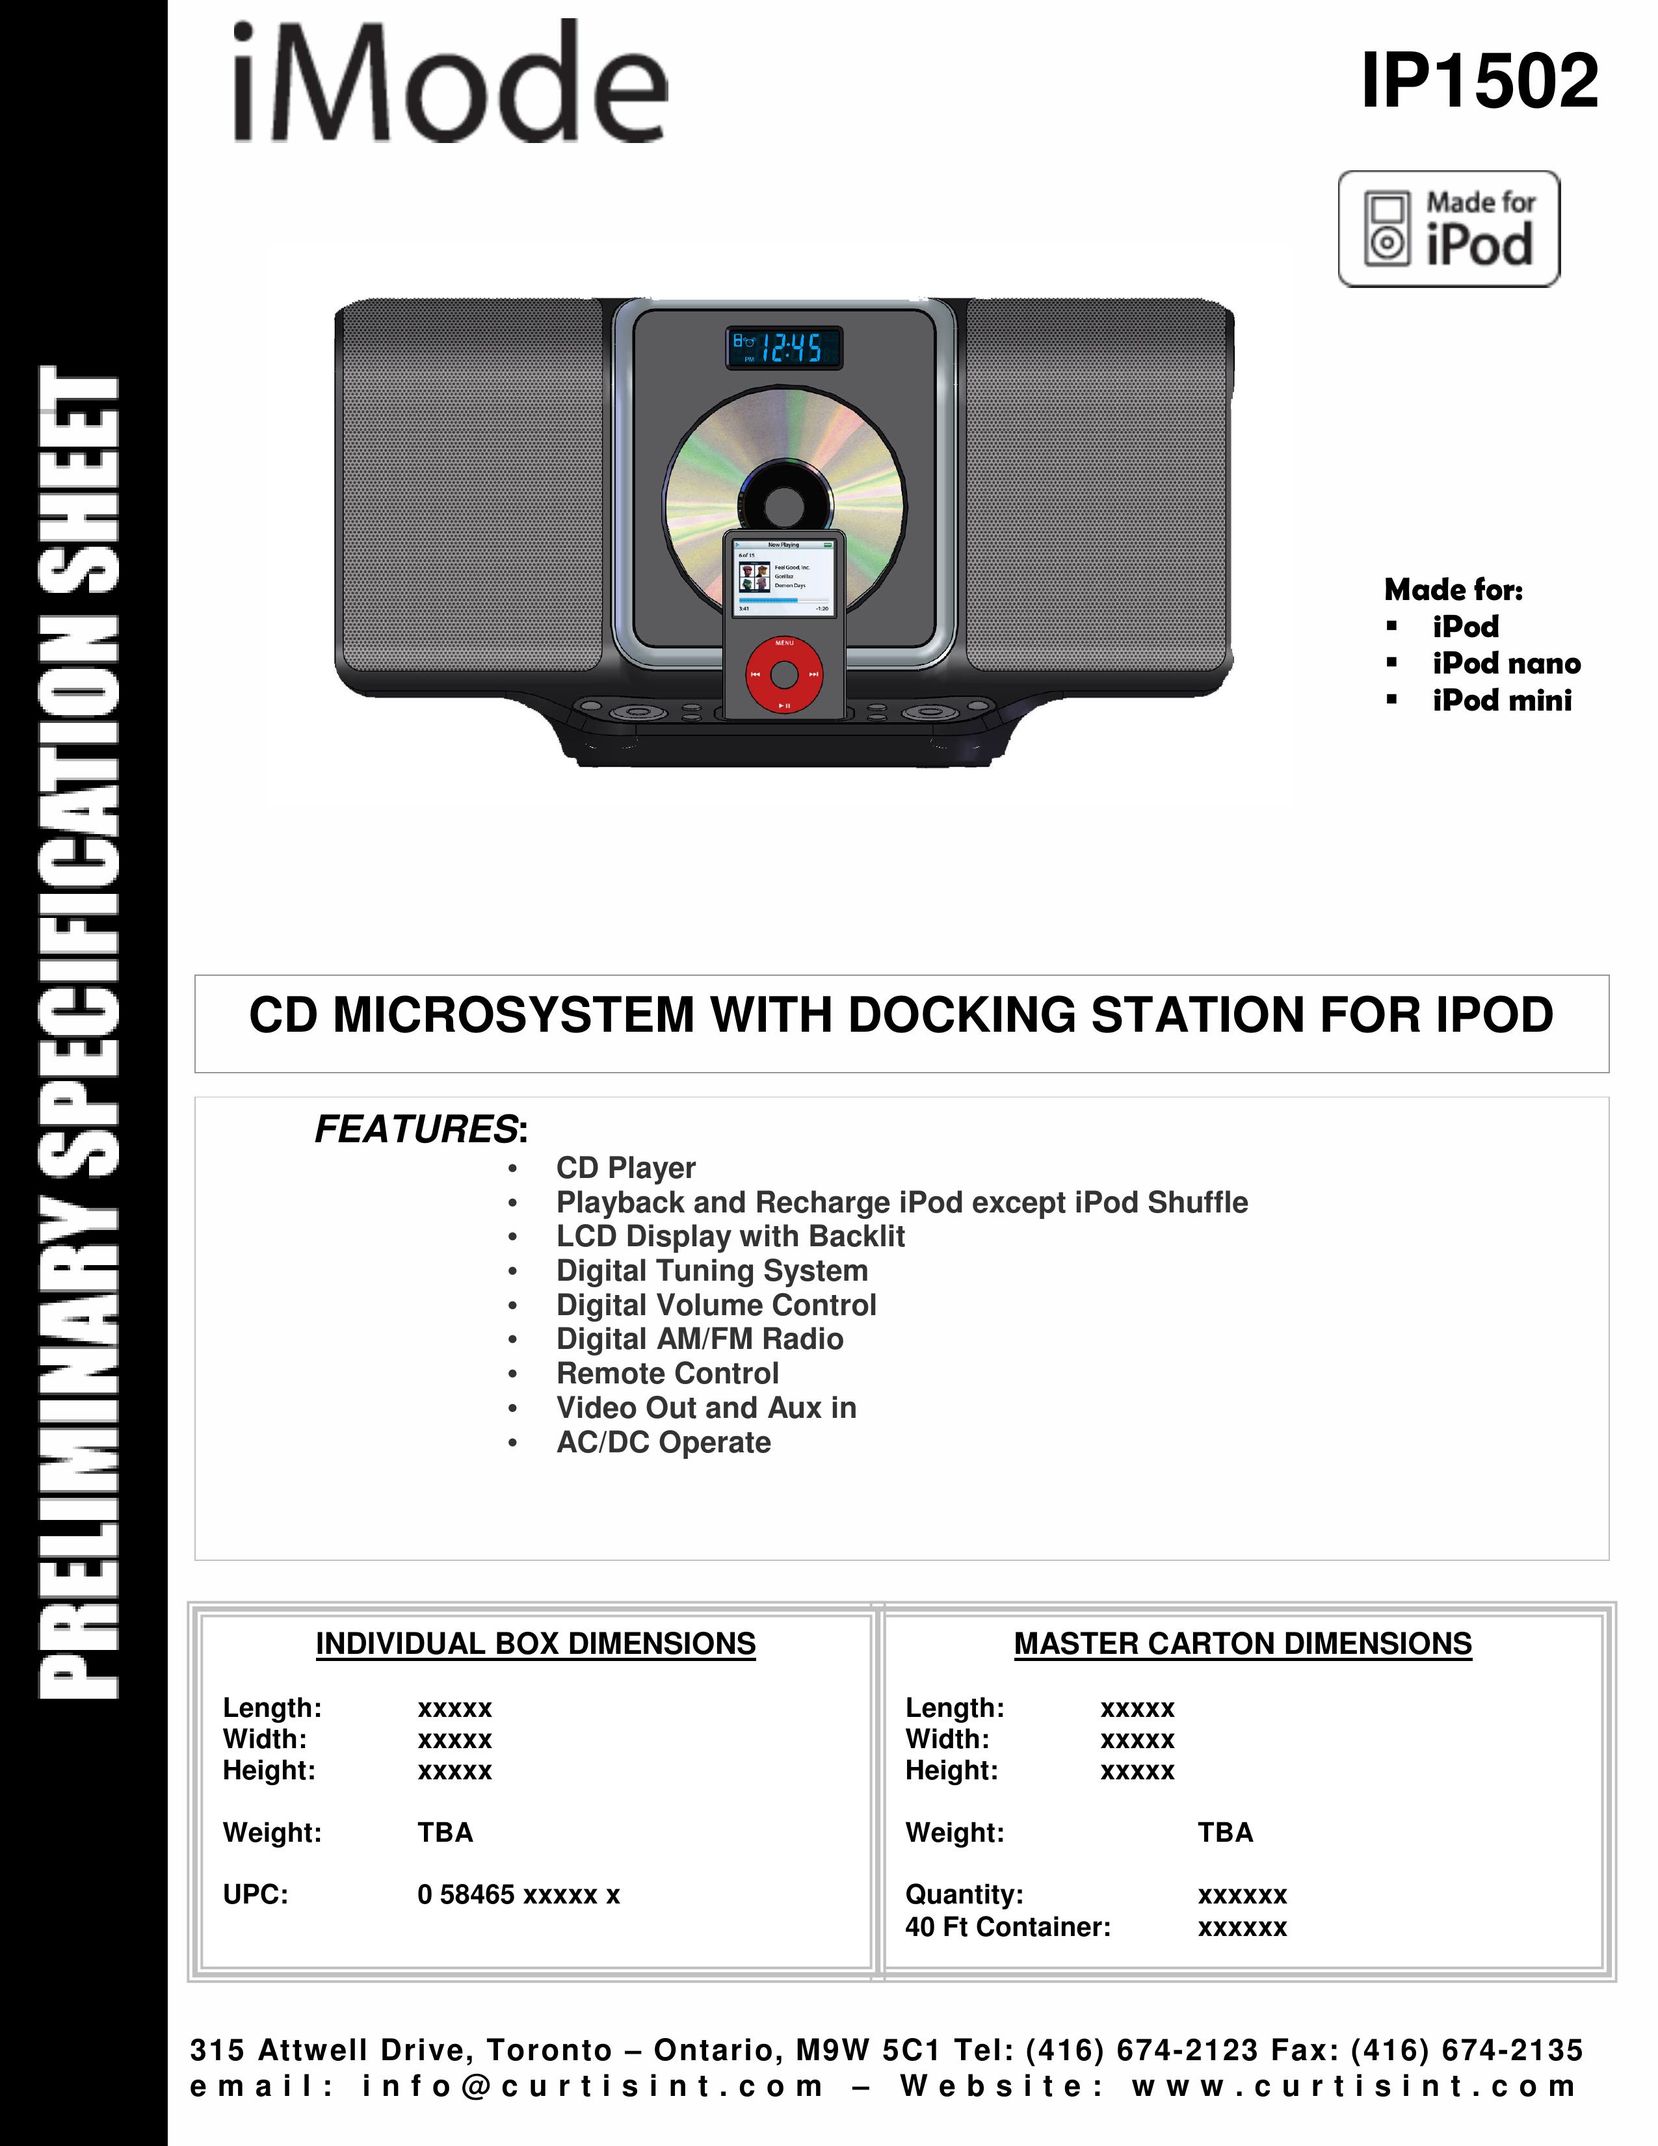 Curtis IP1502 MP3 Docking Station User Manual